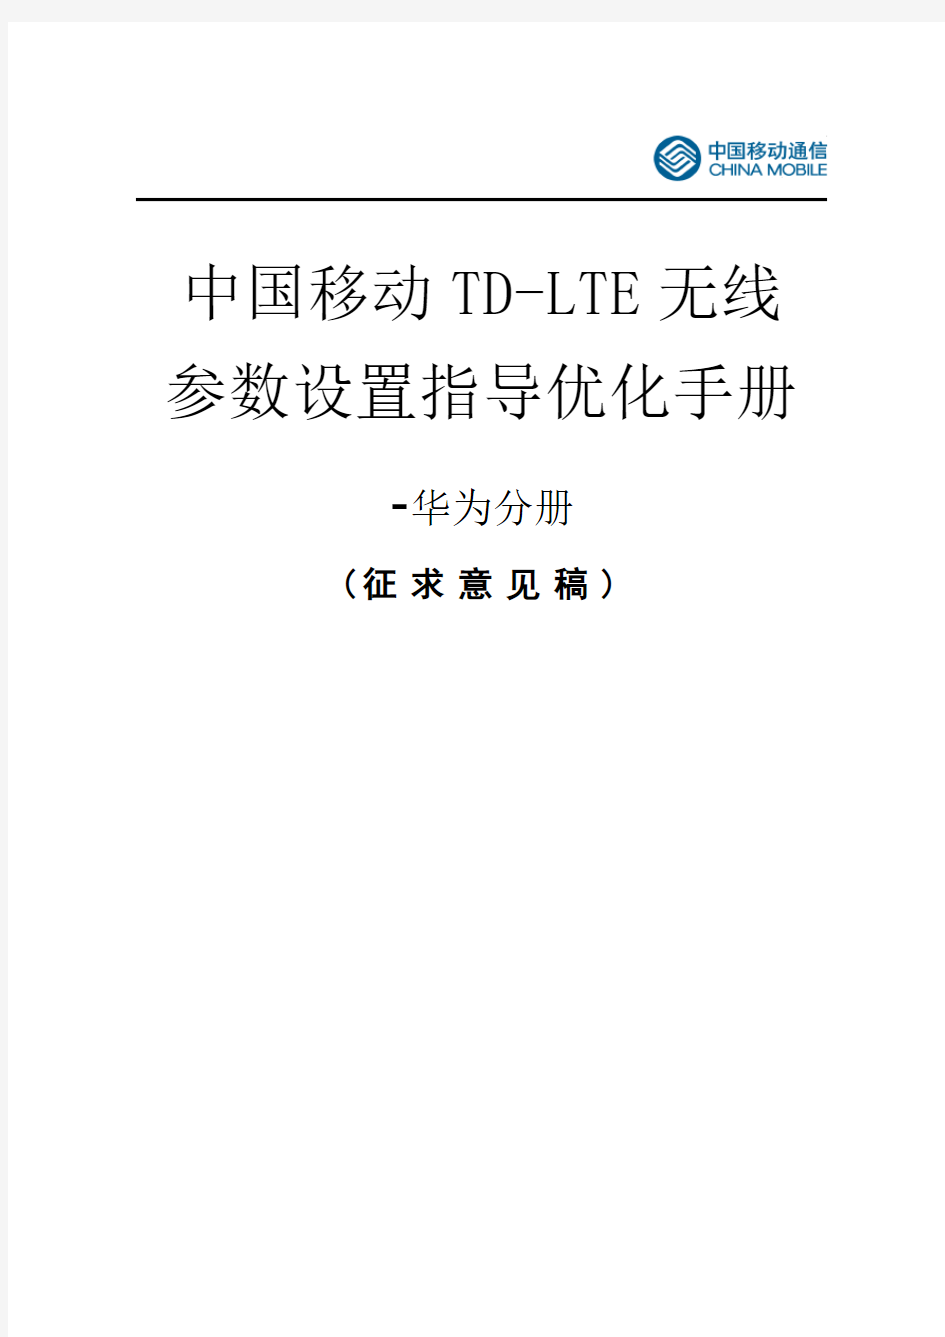 中国移动TD-LTE无线参数设置指导优化手册-华为分册